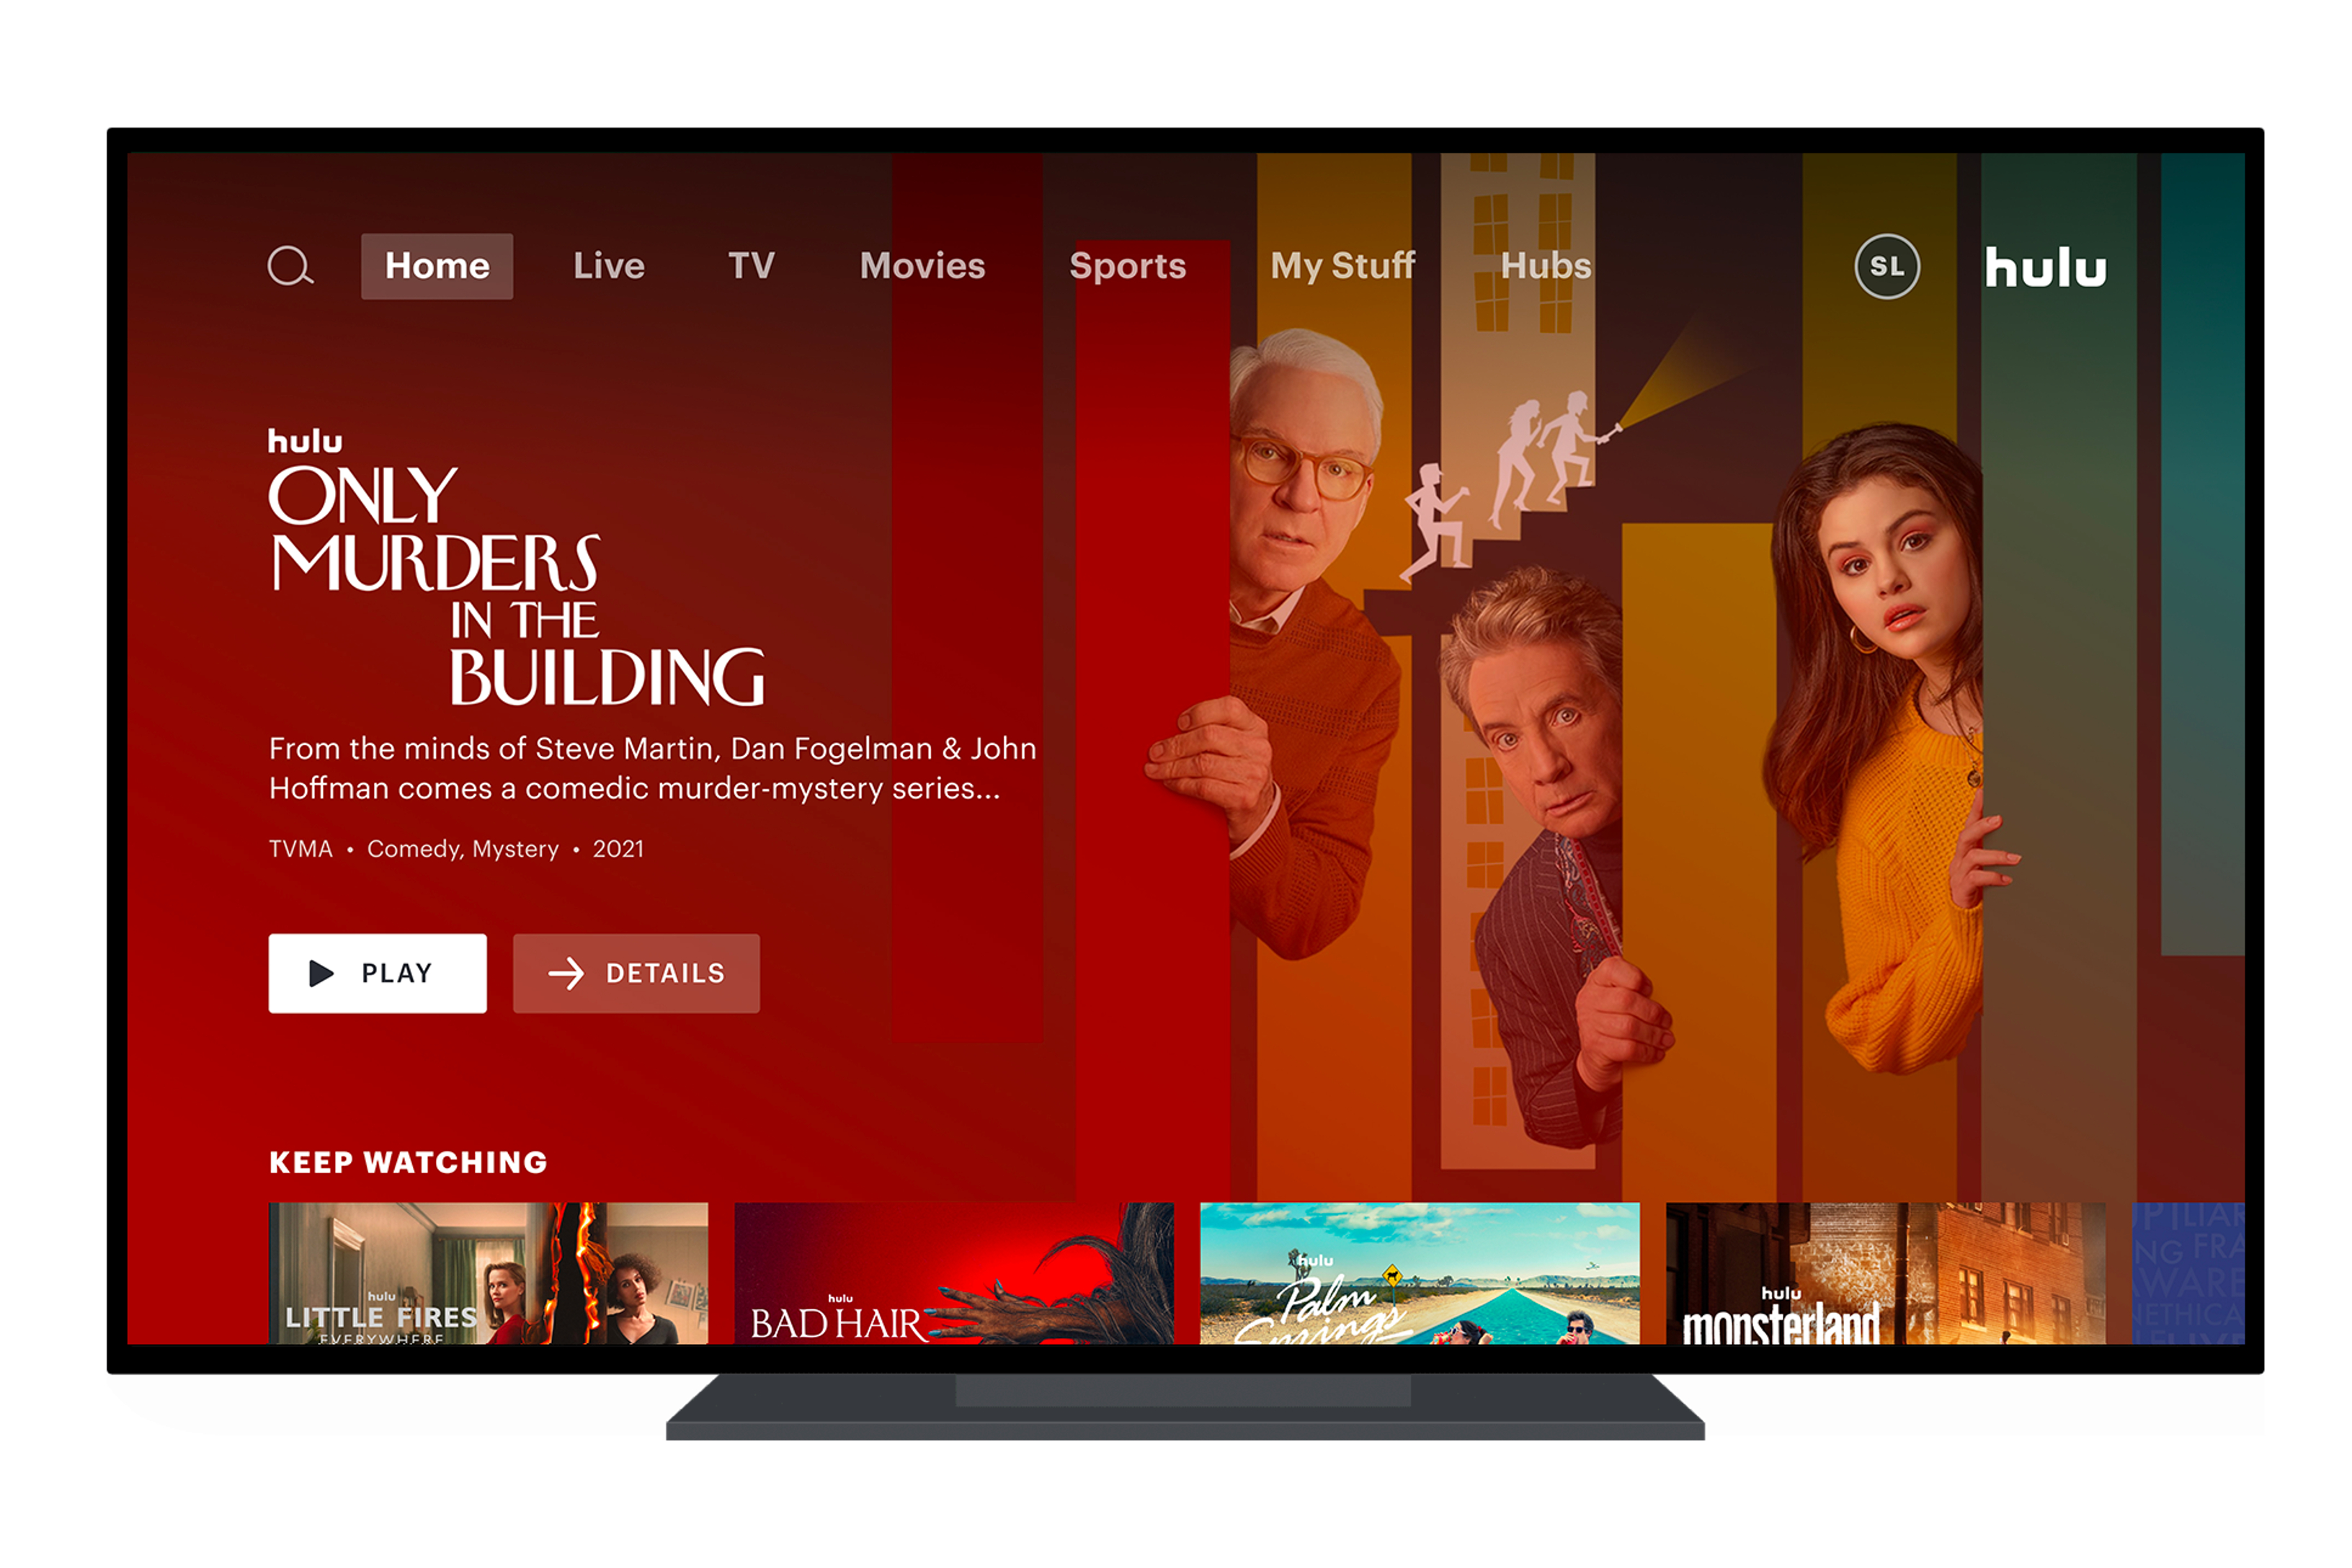 Hulu-Homepage auf einem Fernseher mit der Besetzung Only Murders in the Building.